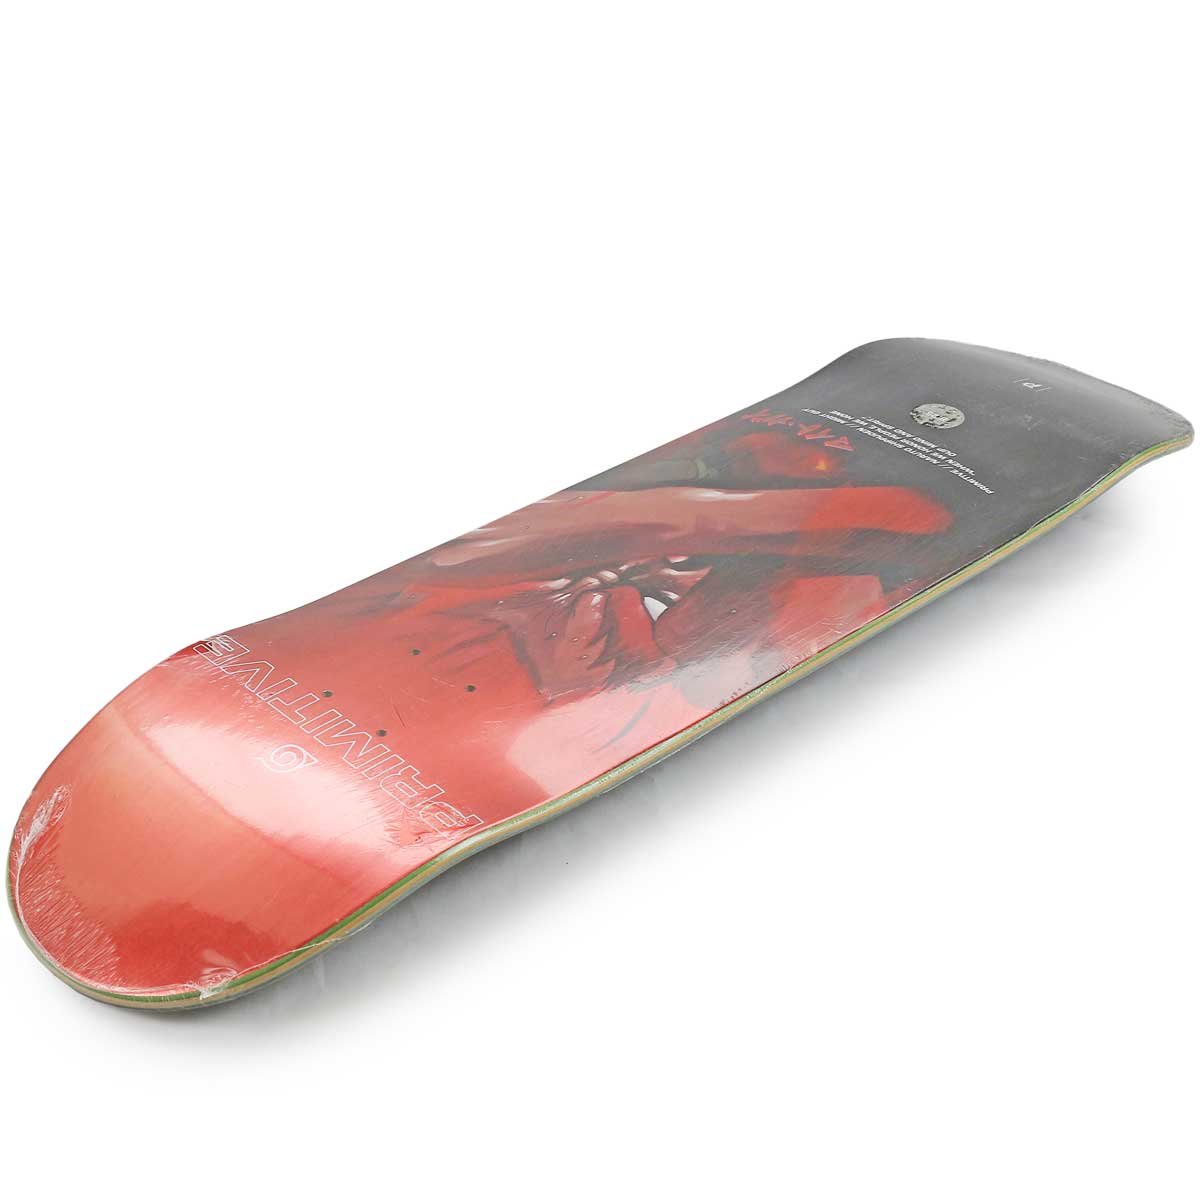 プリミティブ 8.25インチ スケボー デッキ Primitive Skateboards